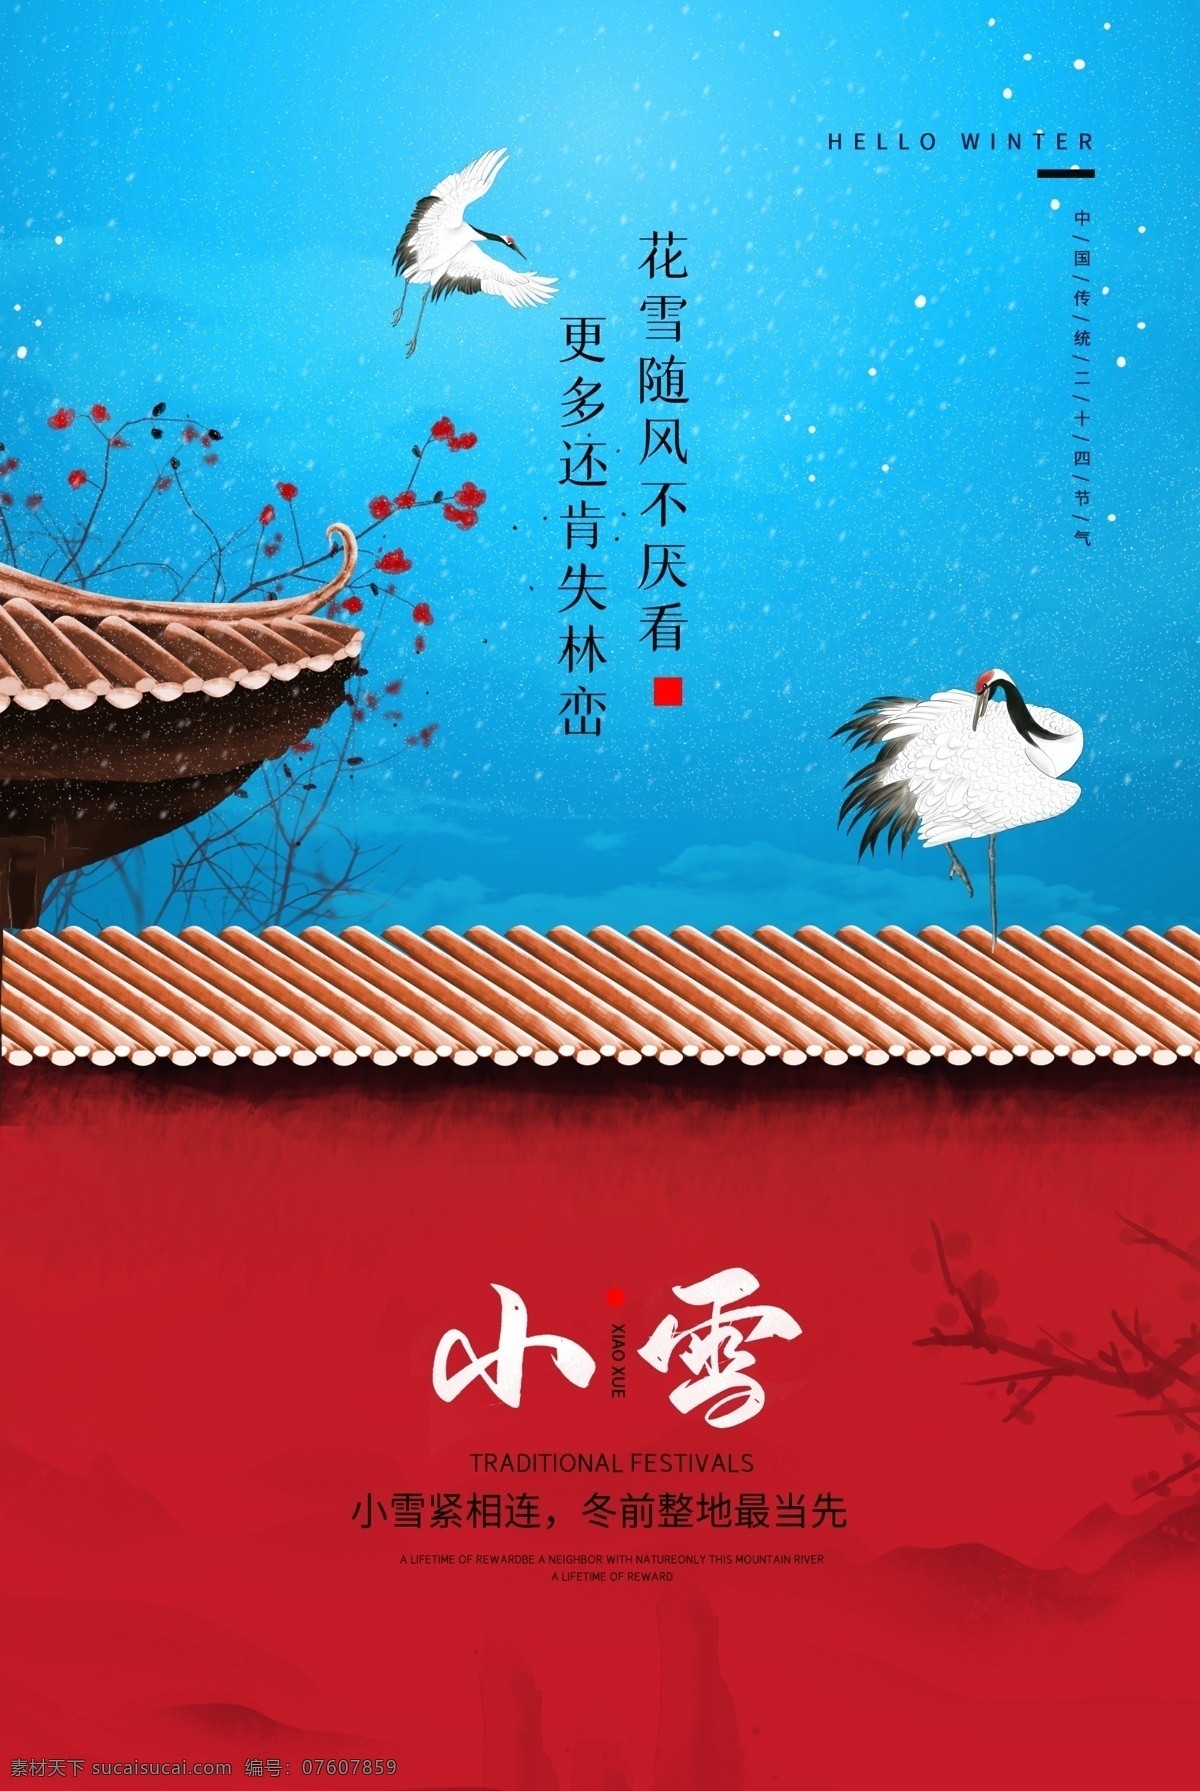 小雪 传统节日 活动 宣传海报 素材图片 传统 节日 宣传 海报